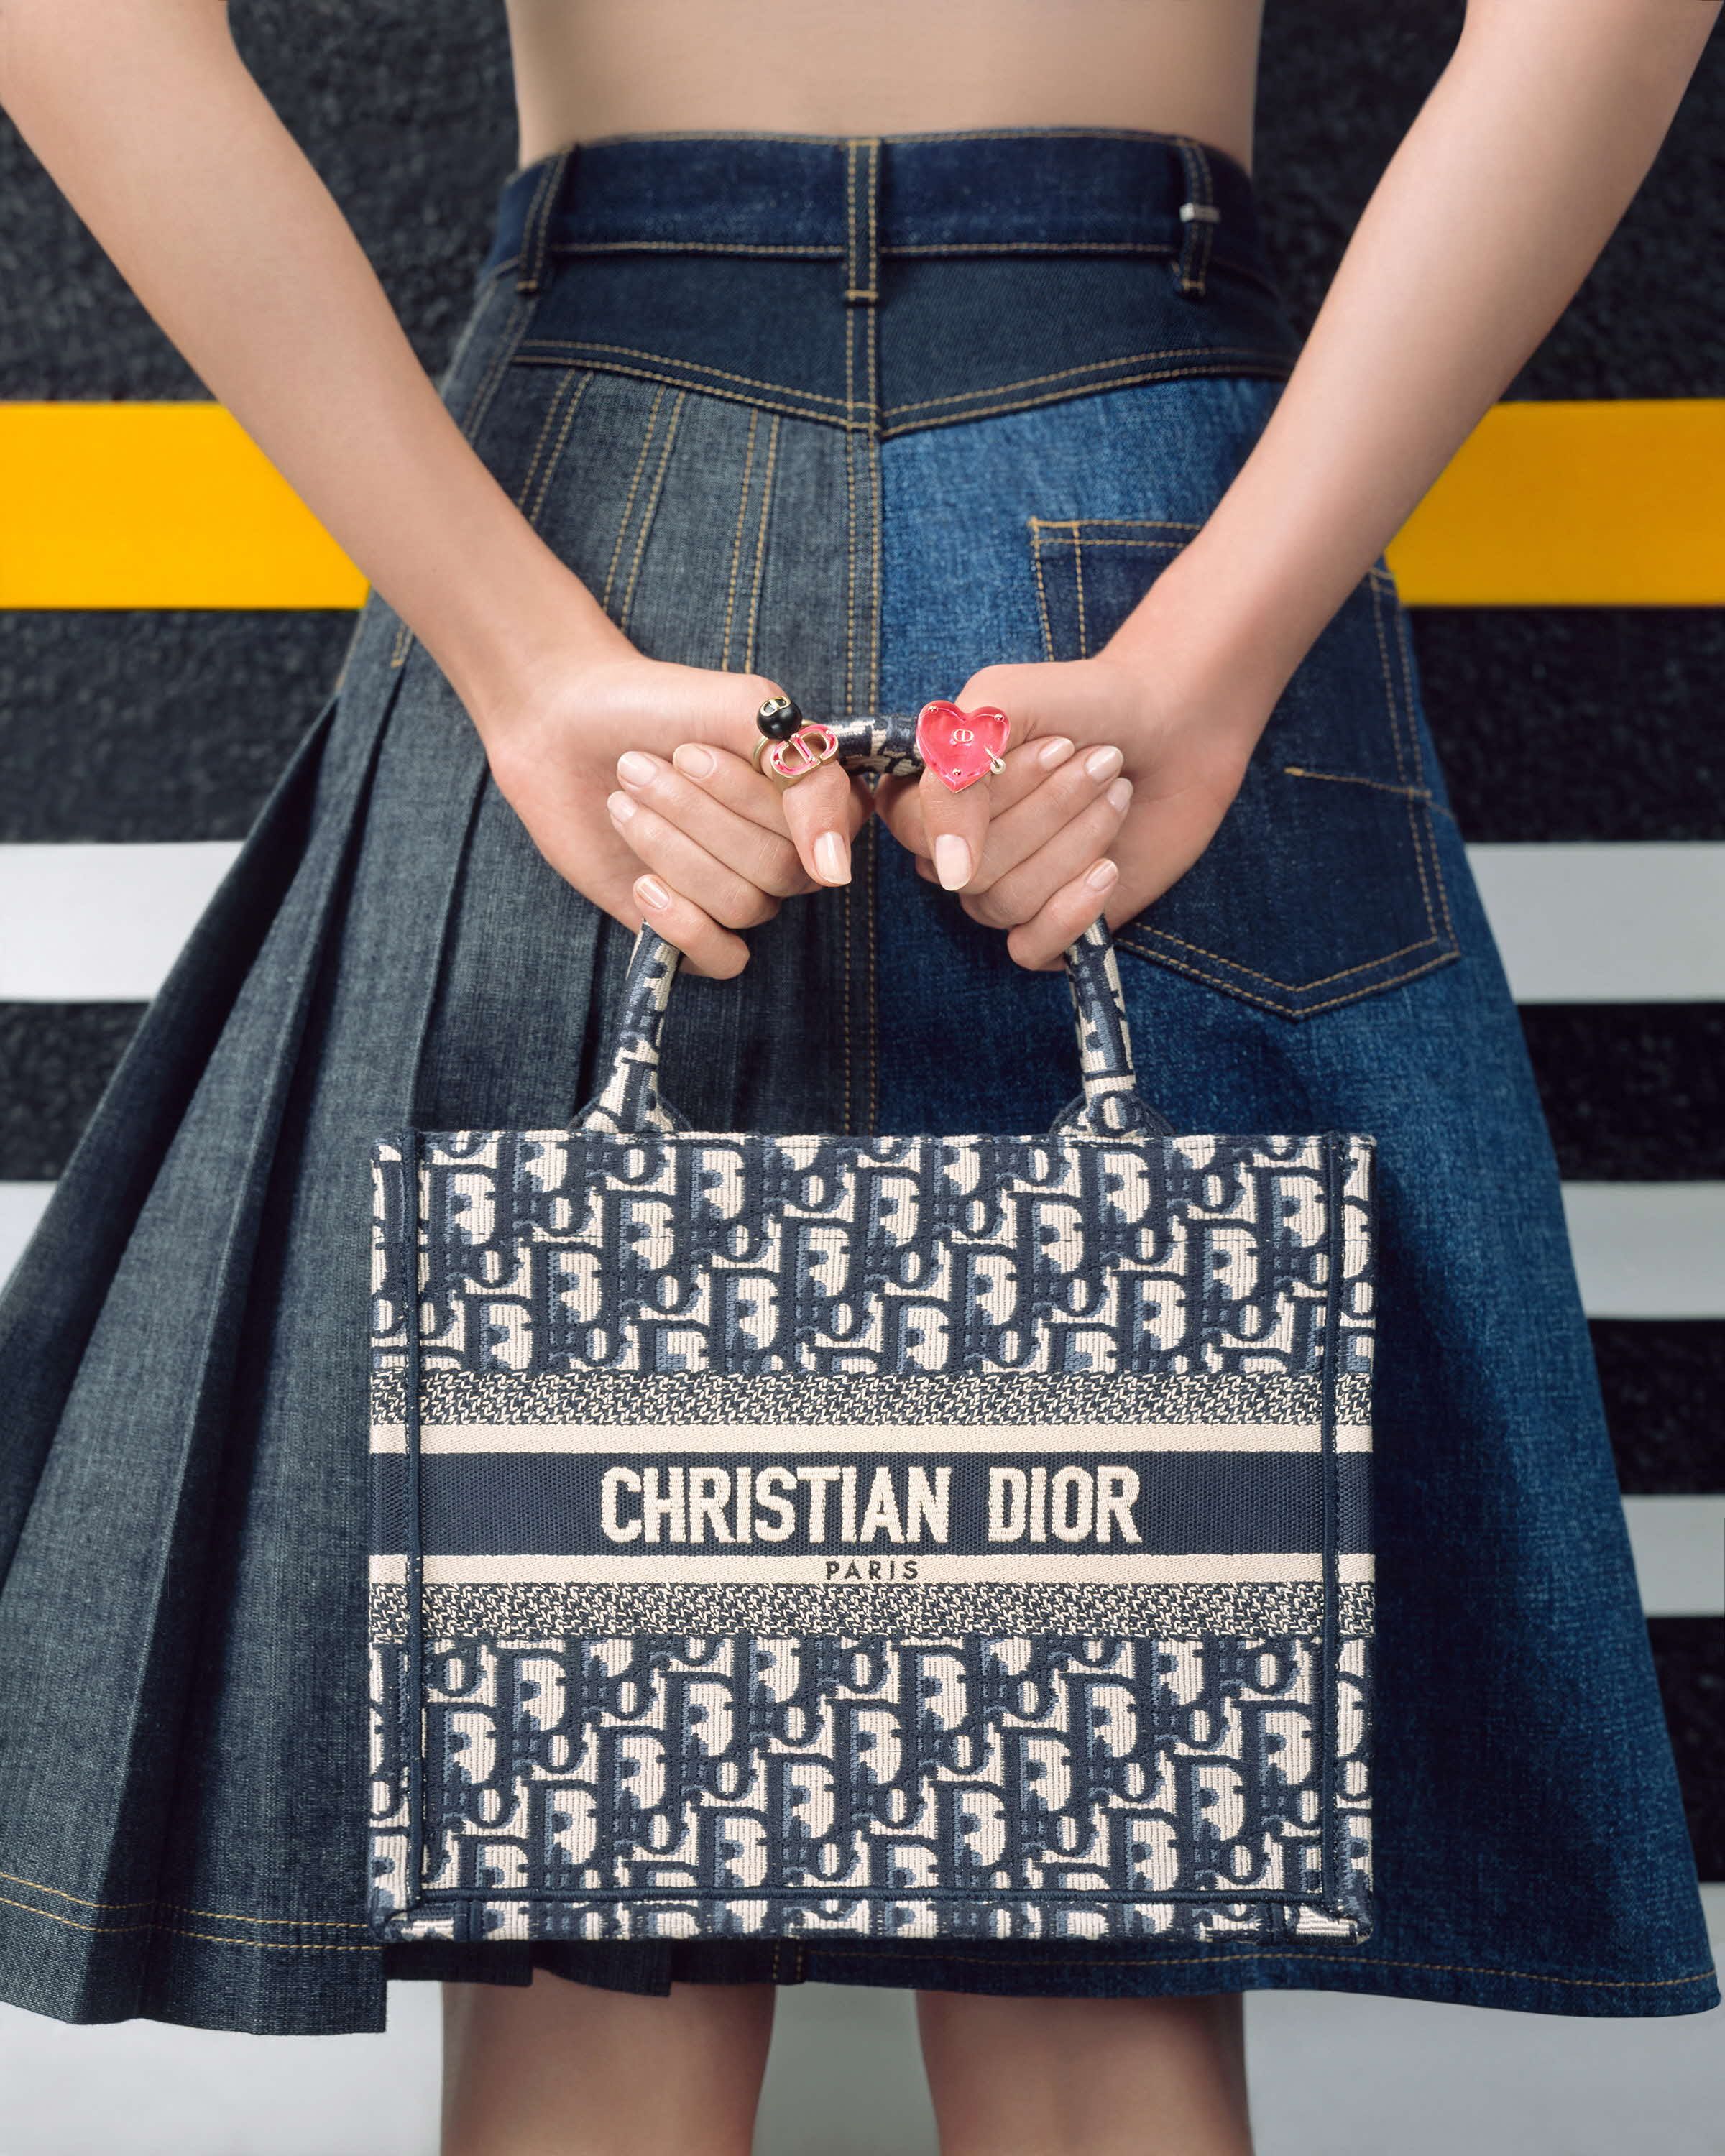 Christian Dior ブックトート返品不可です